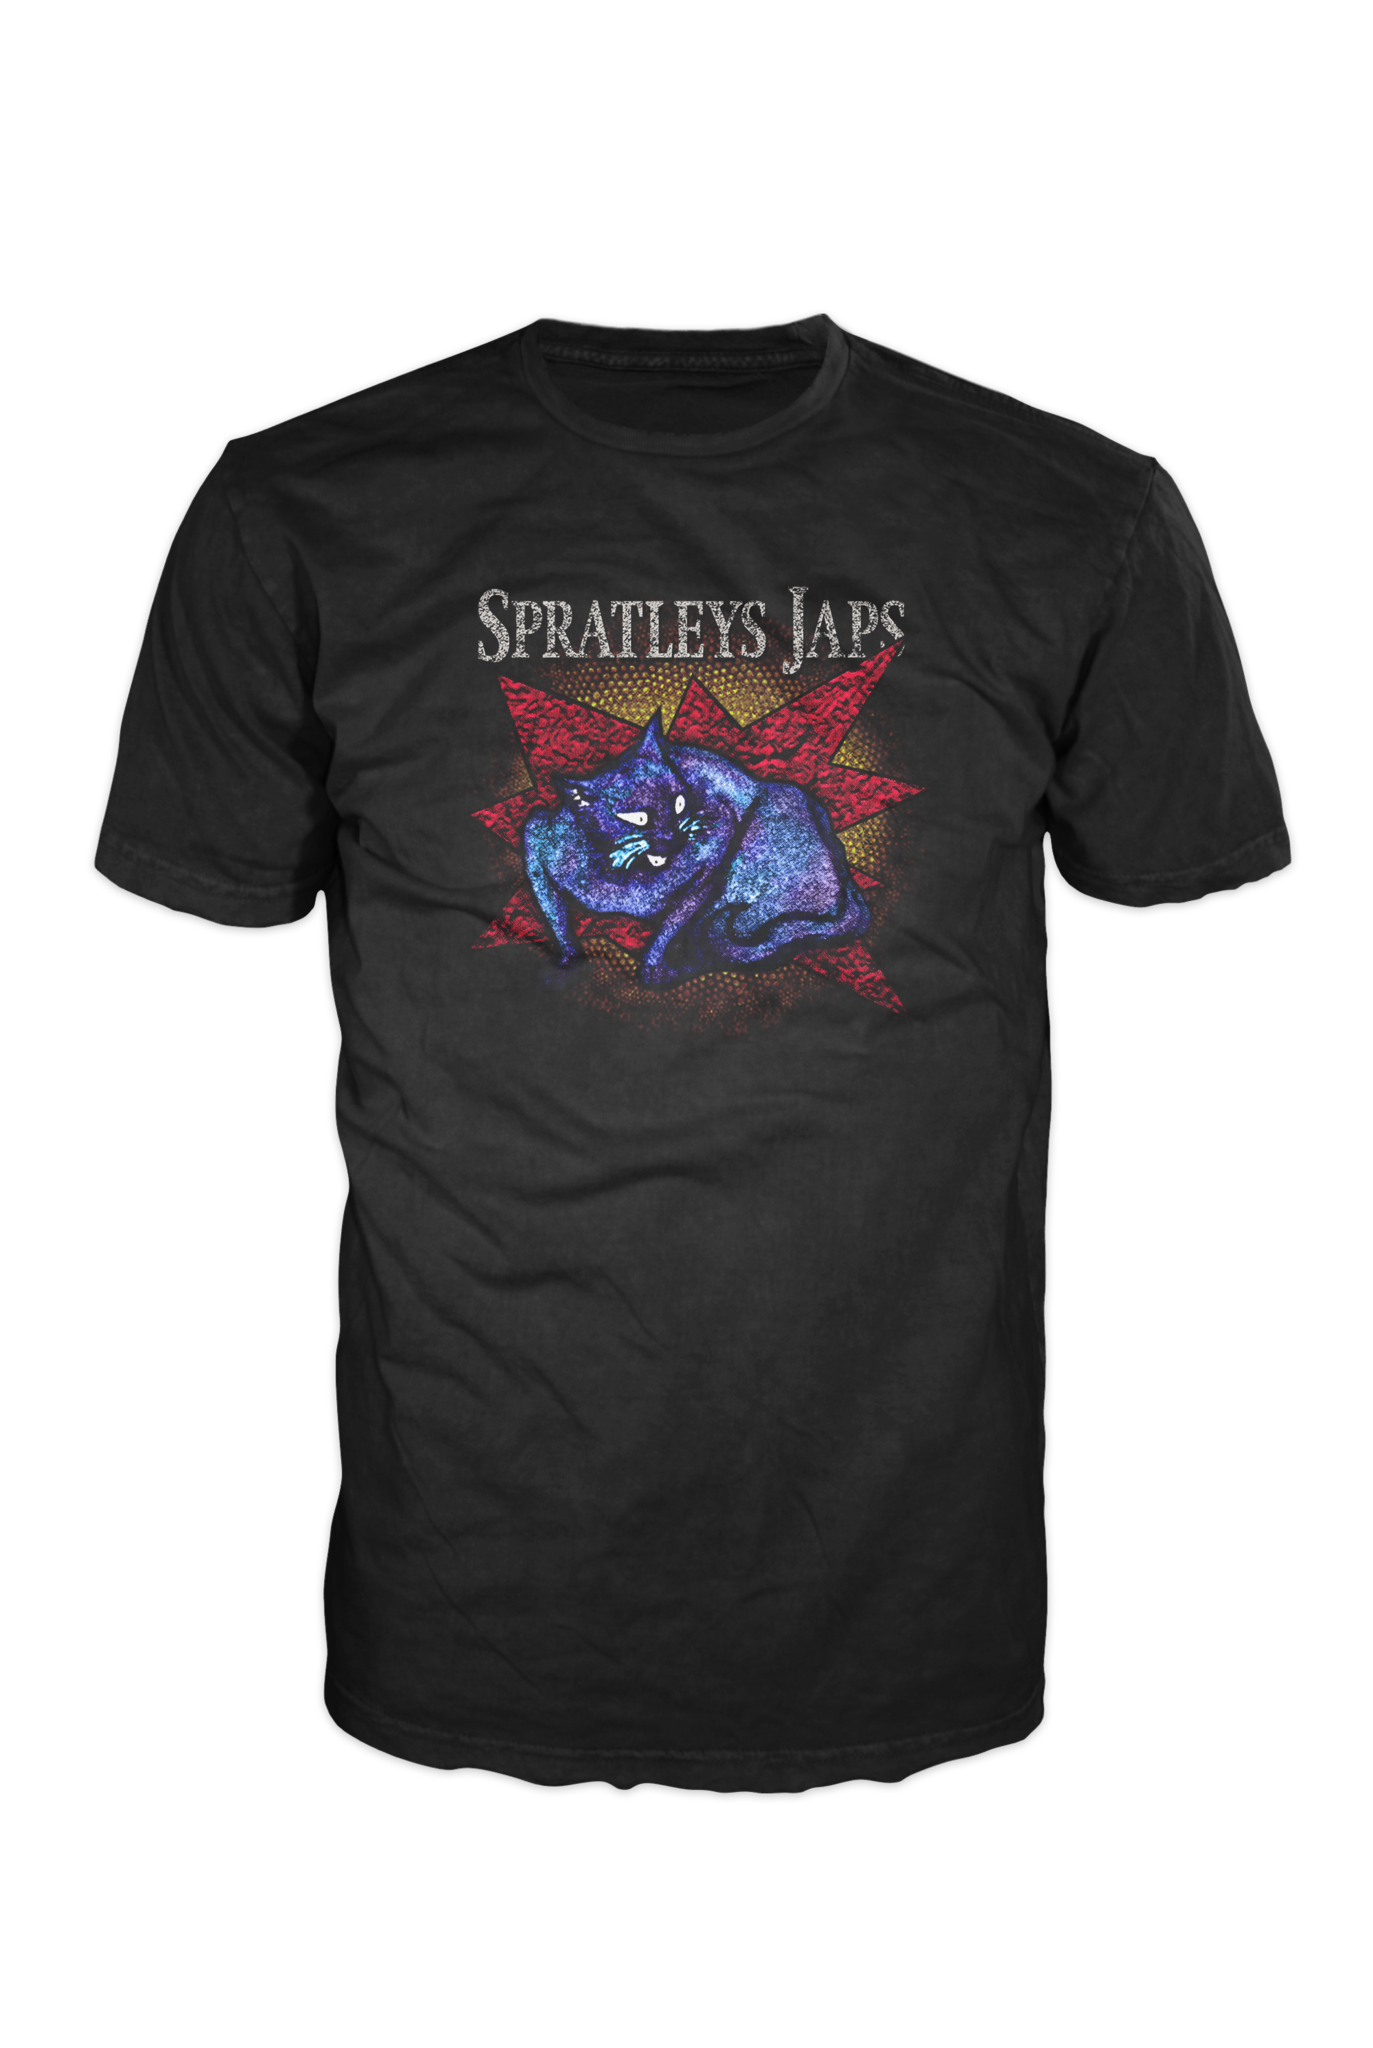 Spratleys Japs T-shirt, black